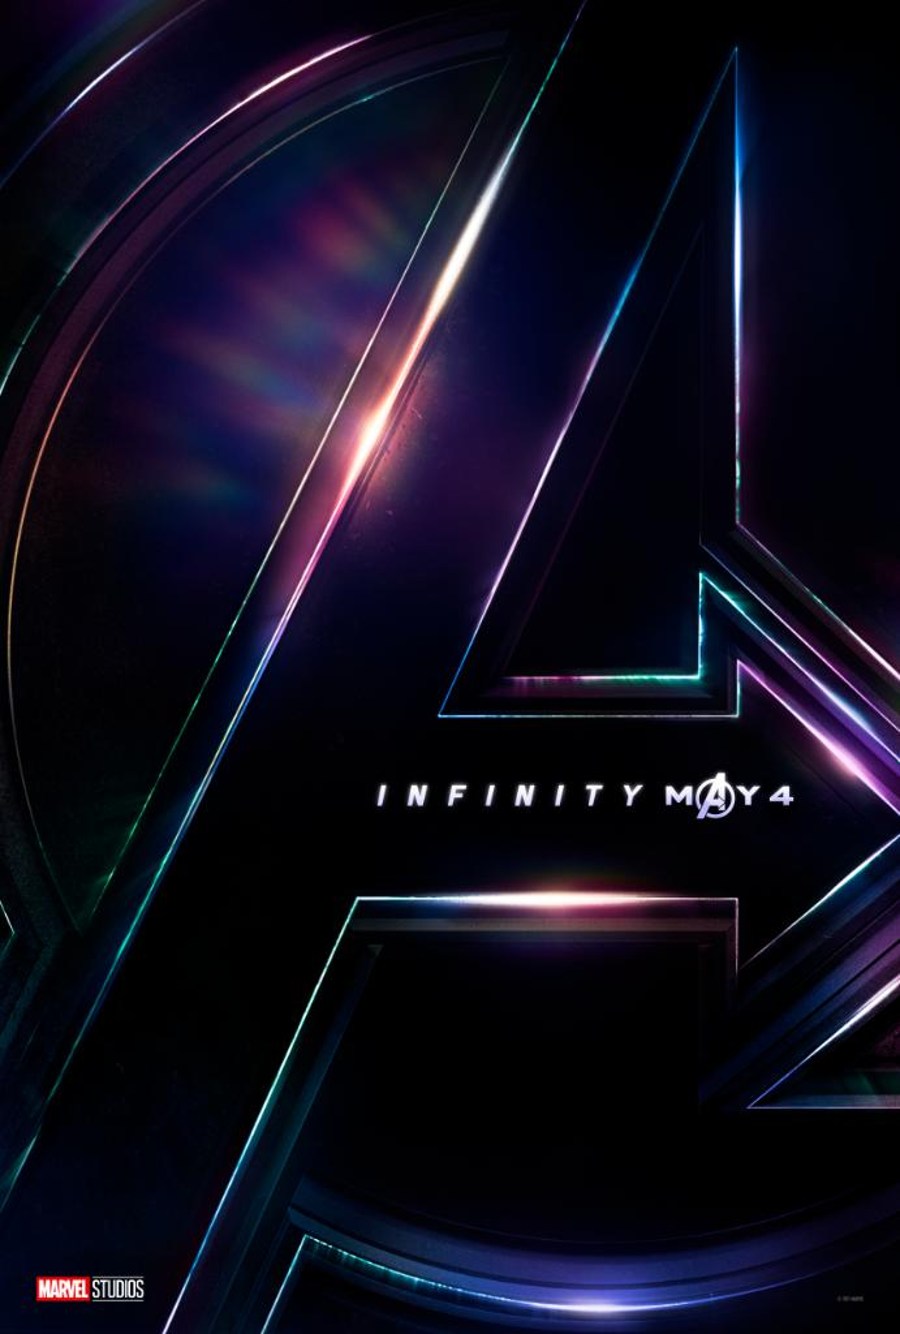 Avengers Infinity War Trailer & Teaserposter